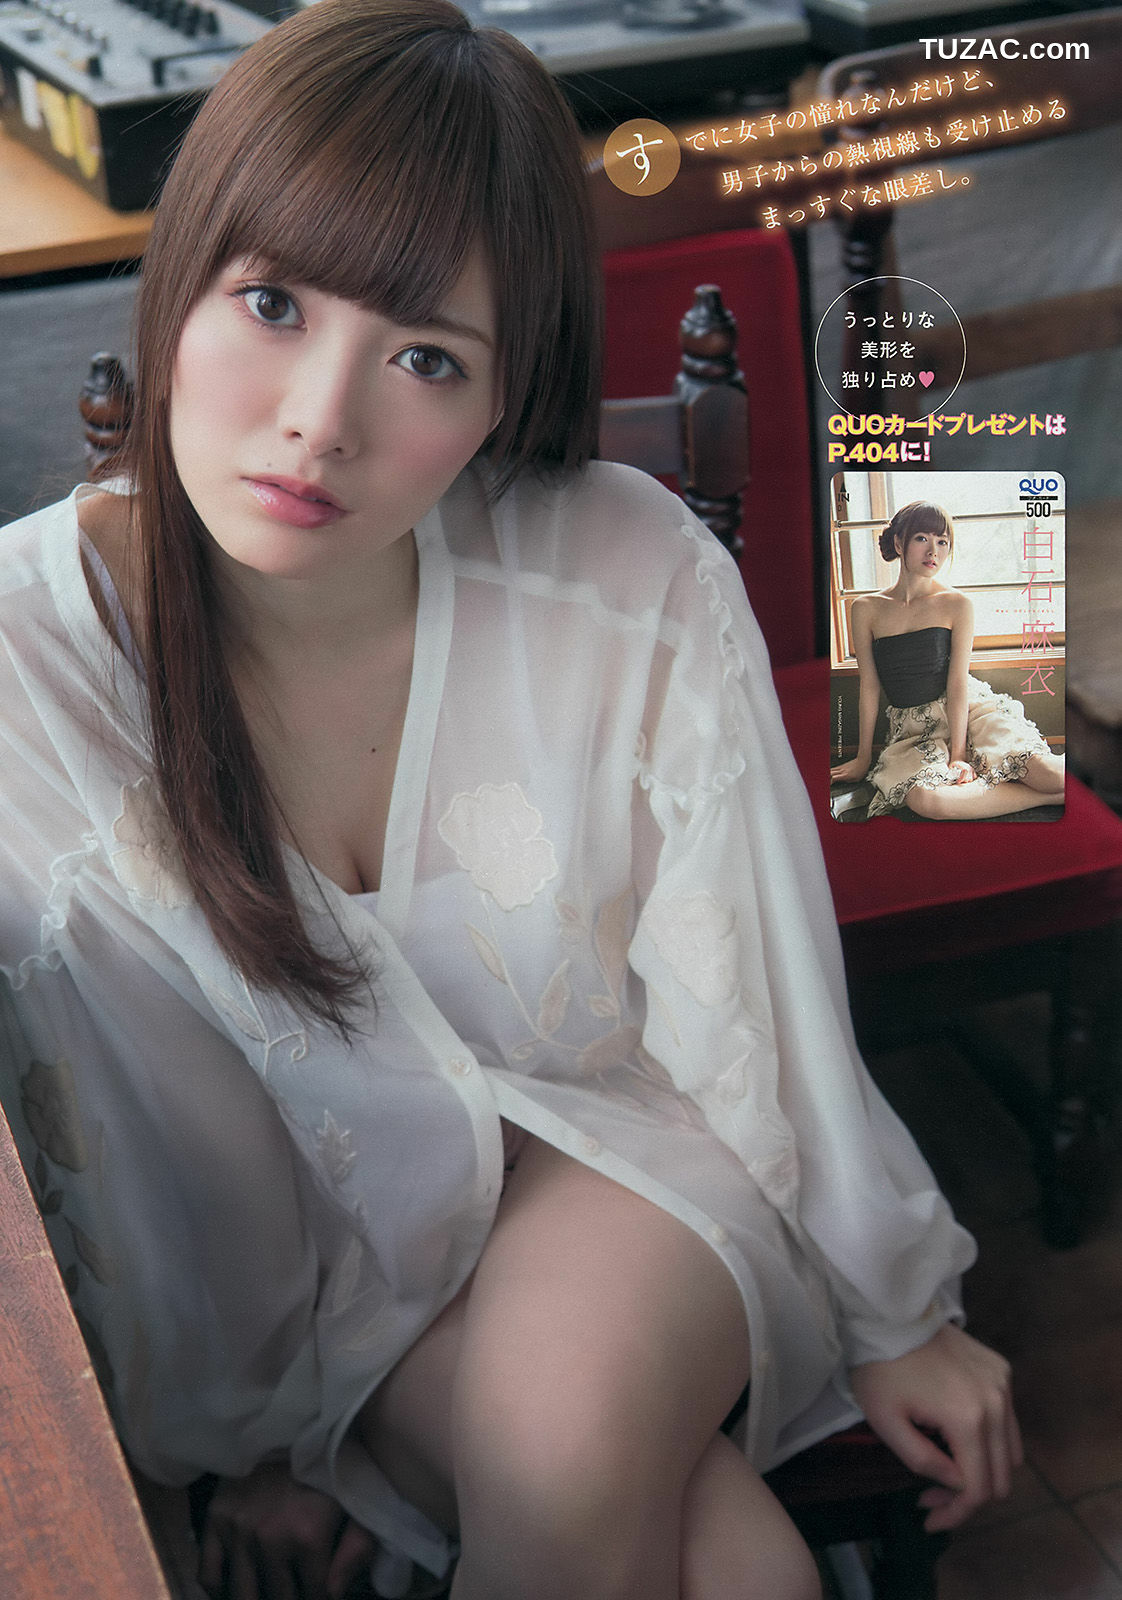 Young Magazine杂志写真_ 白石麻衣 西崎莉麻 2014年No.18 写真杂志[12P]